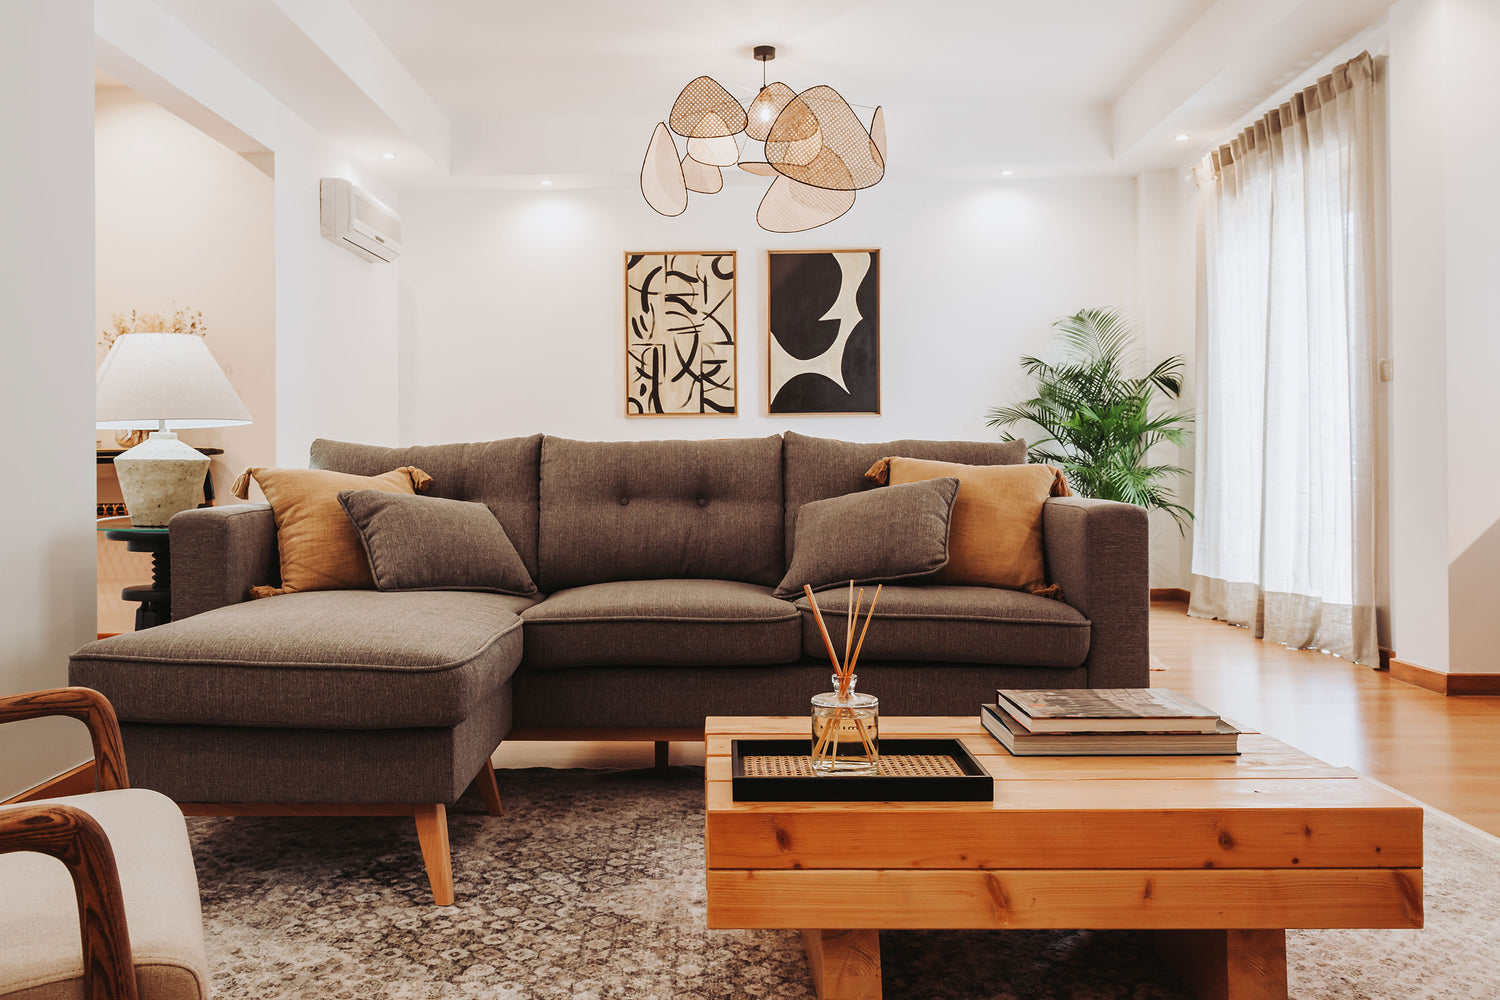 Sala de estar renovada, com um sofá cinzento com chaise longue, uma mesa de apoio de madeira e dois quadros com formas orgânicas de fundo.